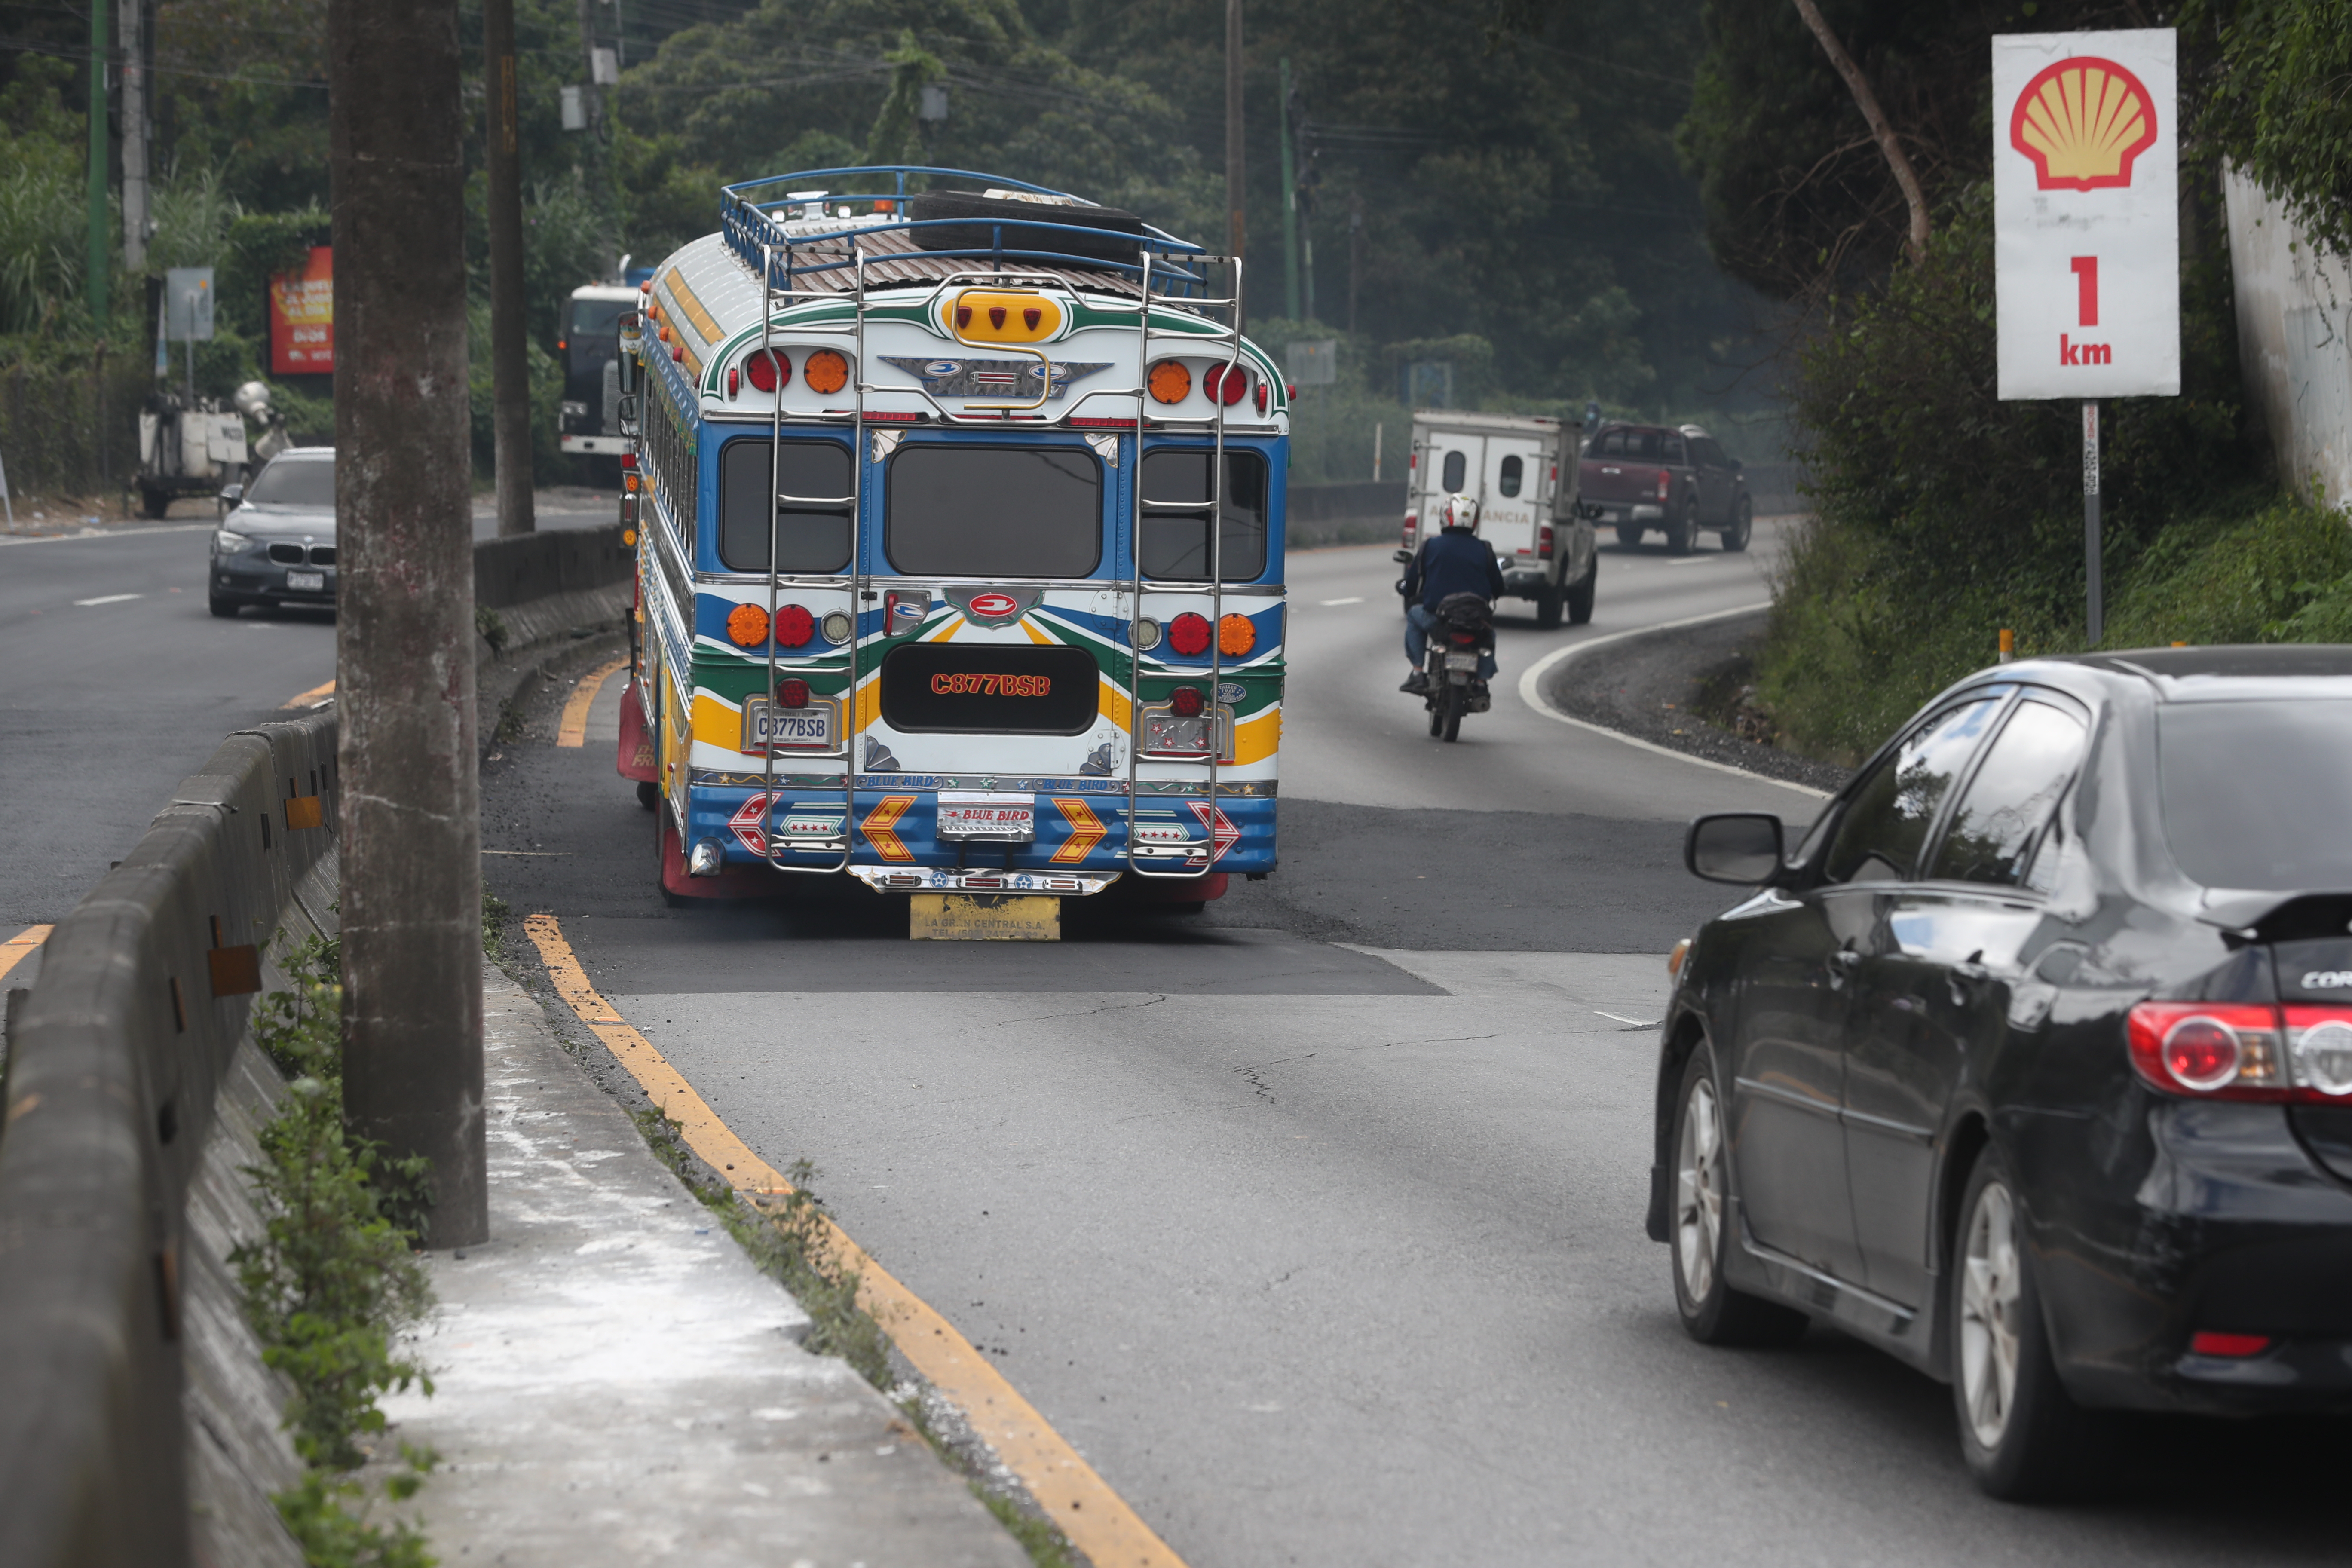 Este fin de semana estará cerrada la carretera a El Salvador en el kilómetro 11.5 donde se han detectado grietas en el asfalto. (Foto Prensa Libre: Érick Ávila)